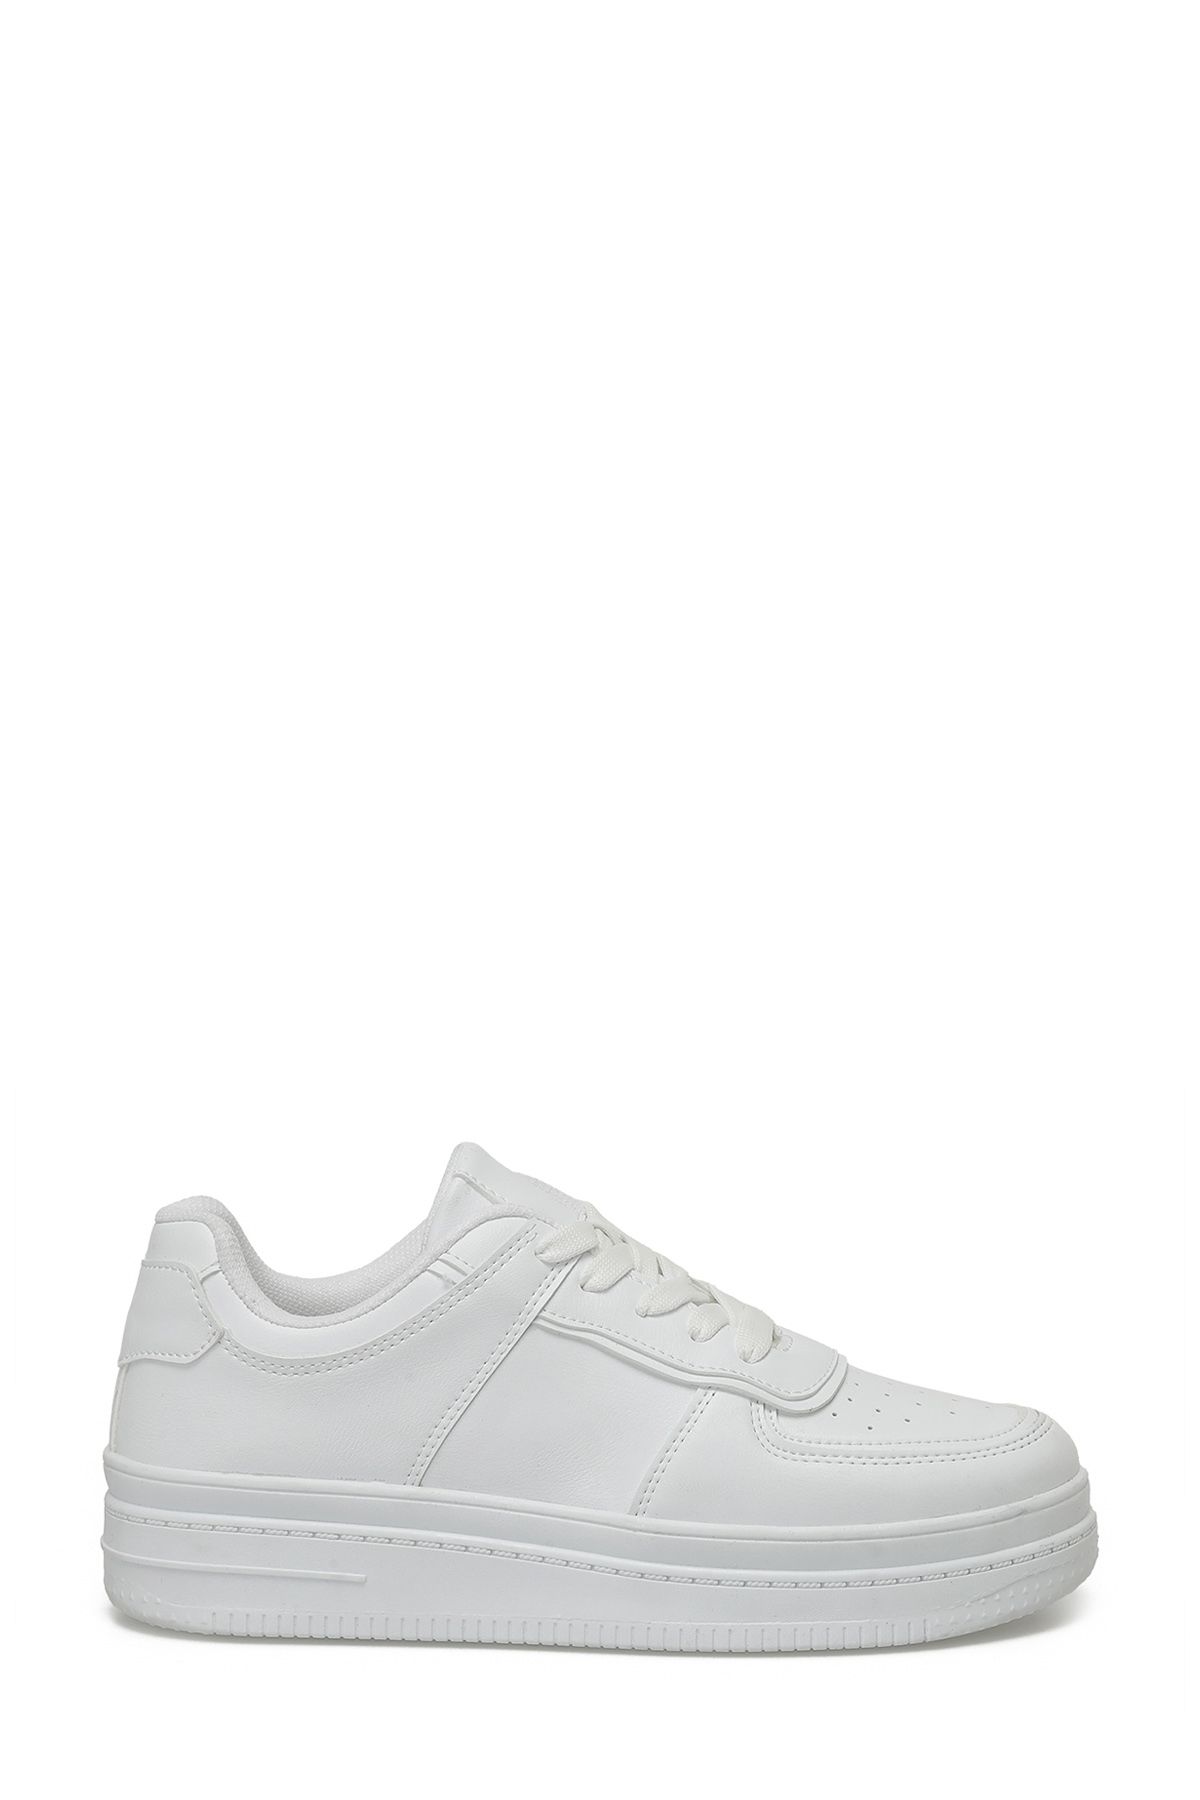 Torex TRX24S-005 4FX Beyaz Kadın Sneaker